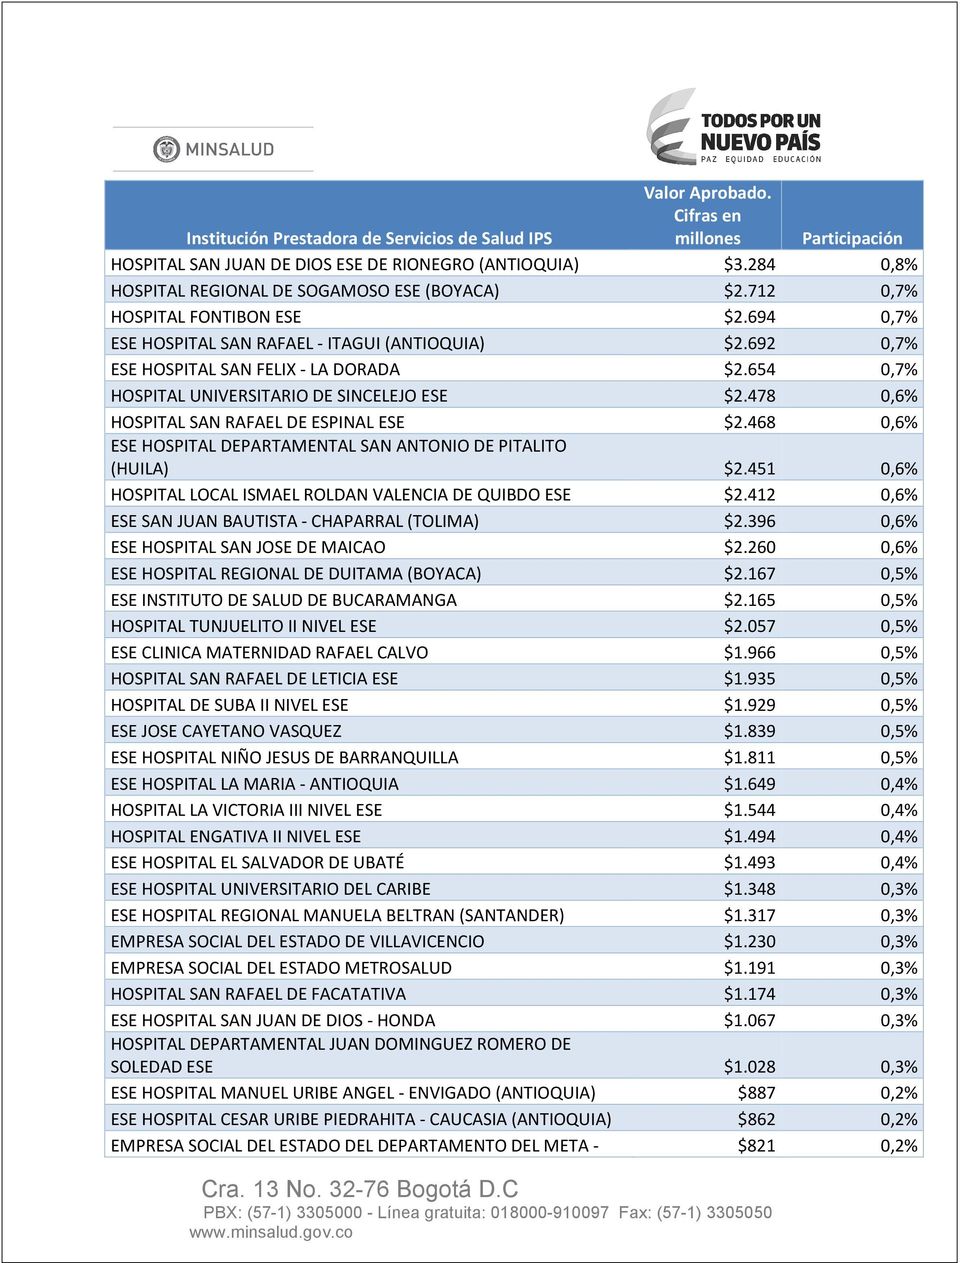 478 0,6% HOSPITAL SAN RAFAEL DE ESPINAL ESE $2.468 0,6% ESE HOSPITAL DEPARTAMENTAL SAN ANTONIO DE PITALITO (HUILA) $2.451 0,6% HOSPITAL LOCAL ISMAEL ROLDAN VALENCIA DE QUIBDO ESE $2.